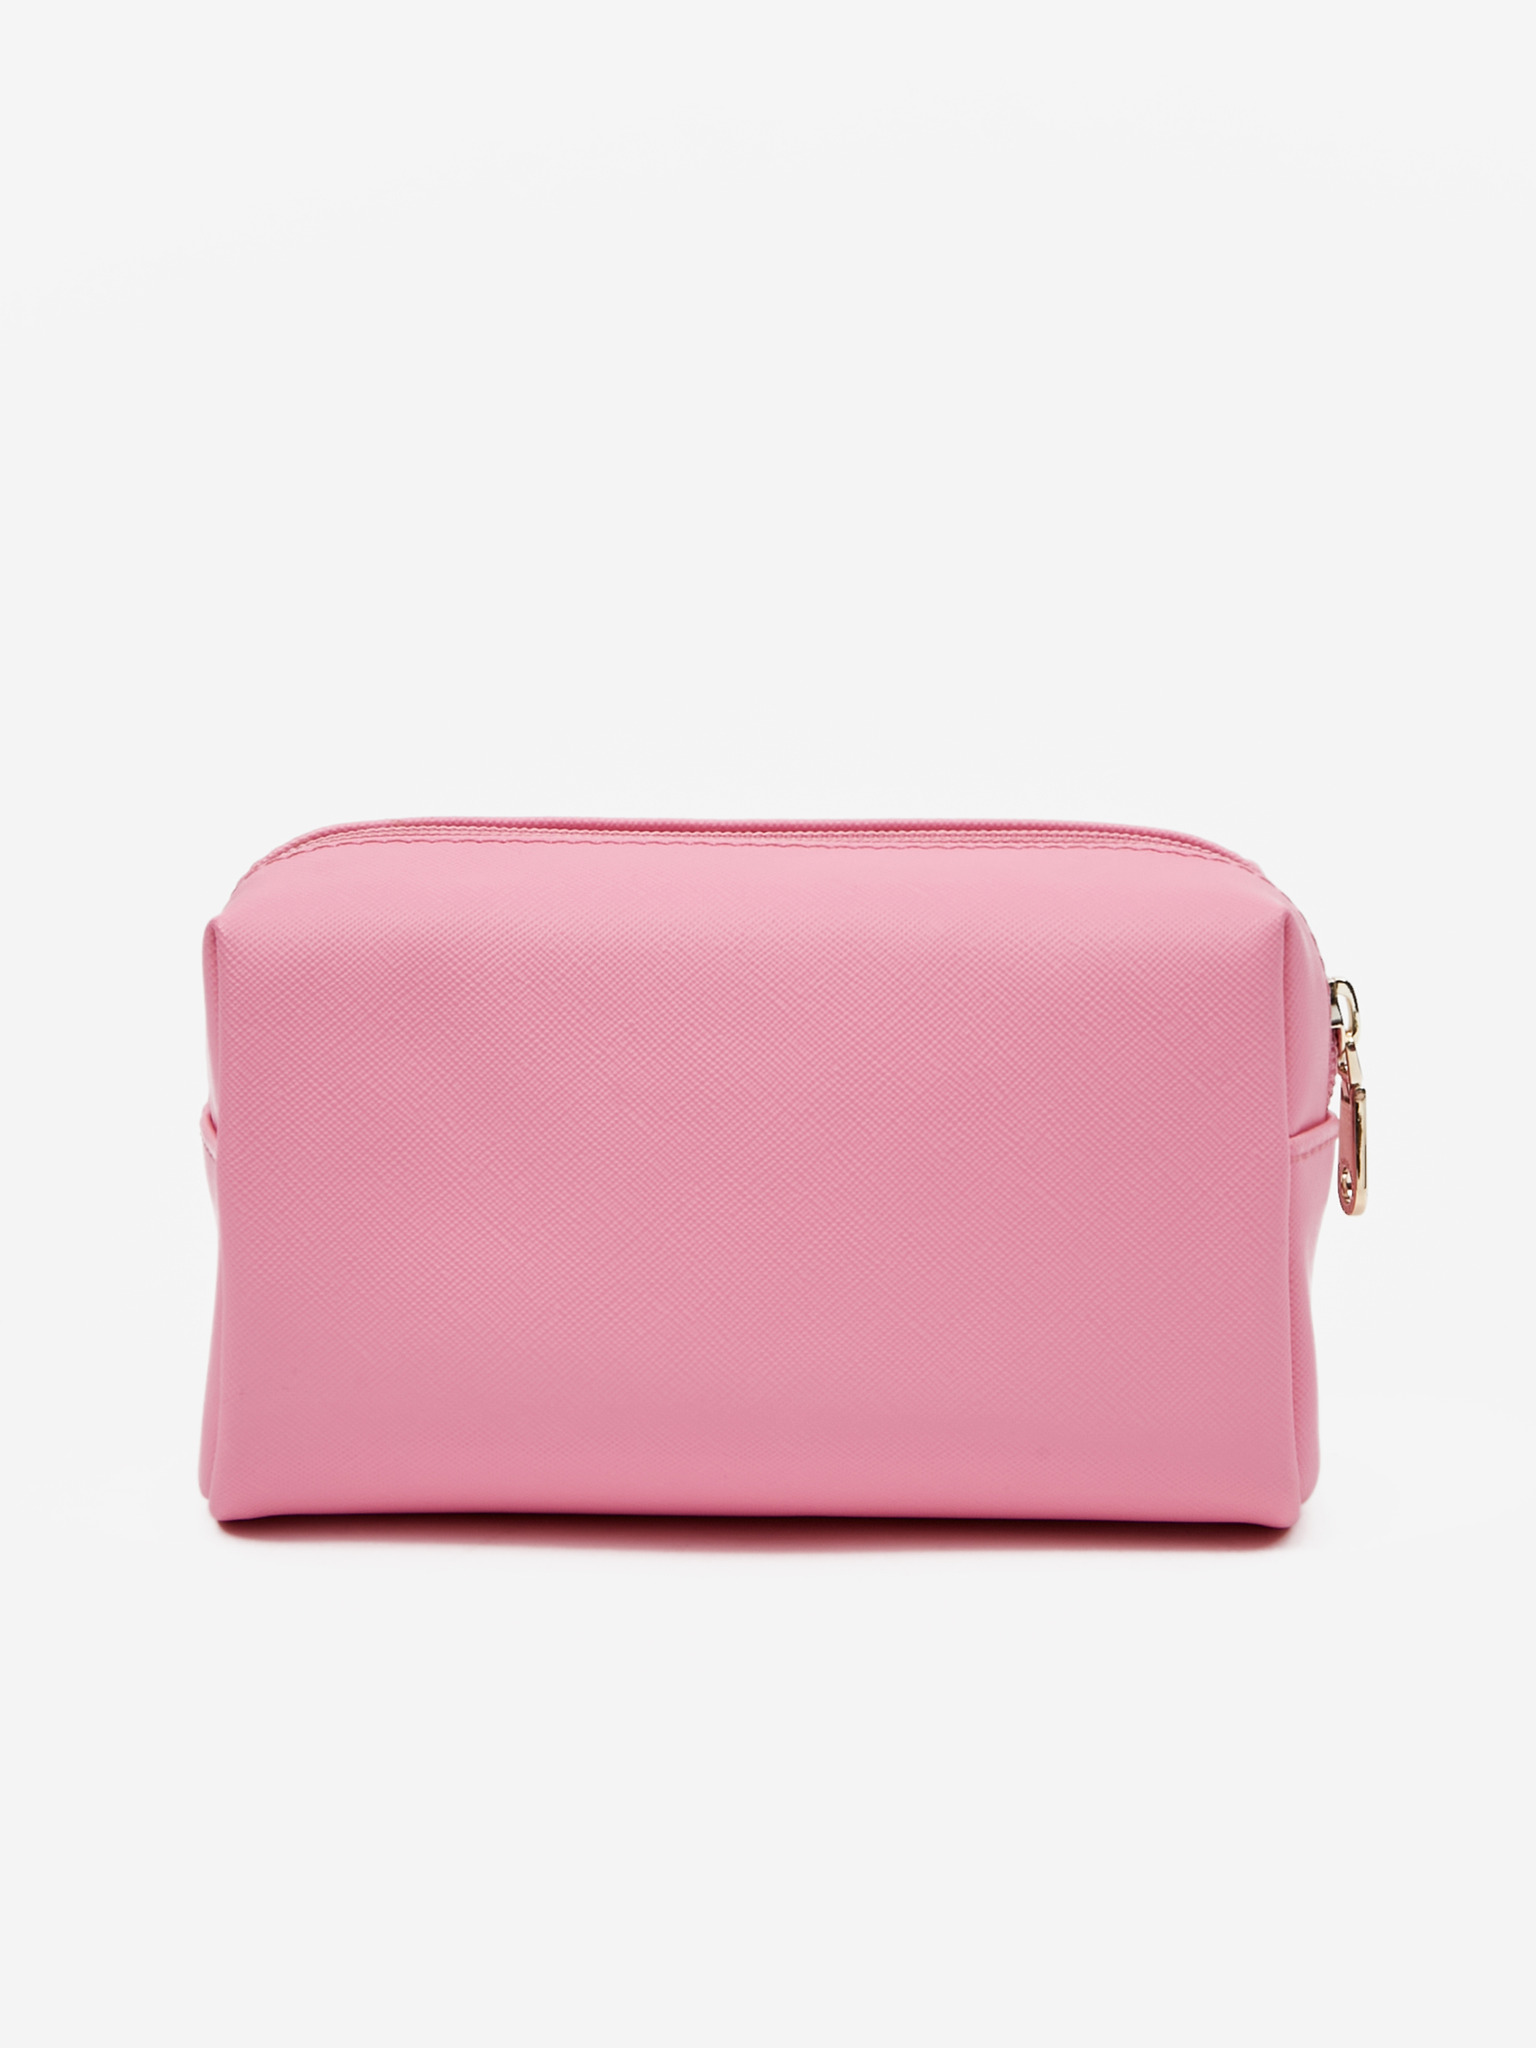 Dark Red Guess purse/handbag | eBay